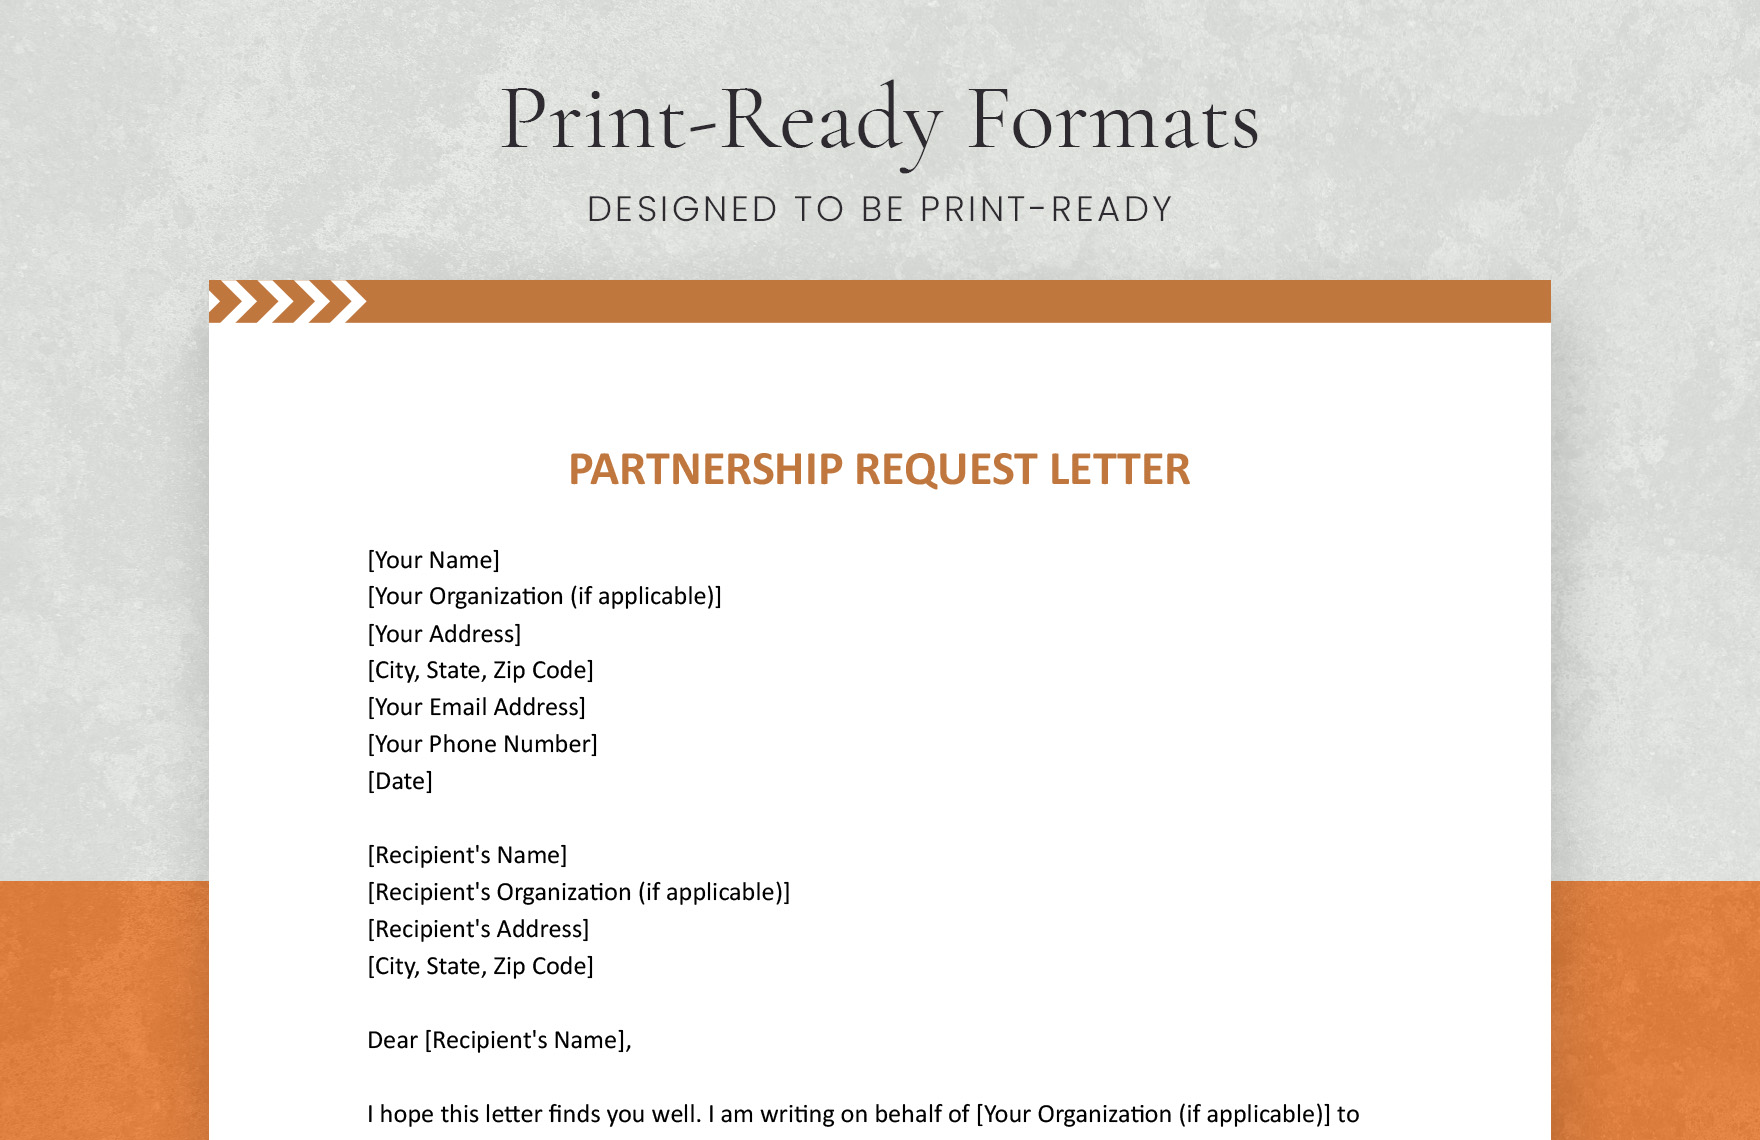 Partnership Request Letter